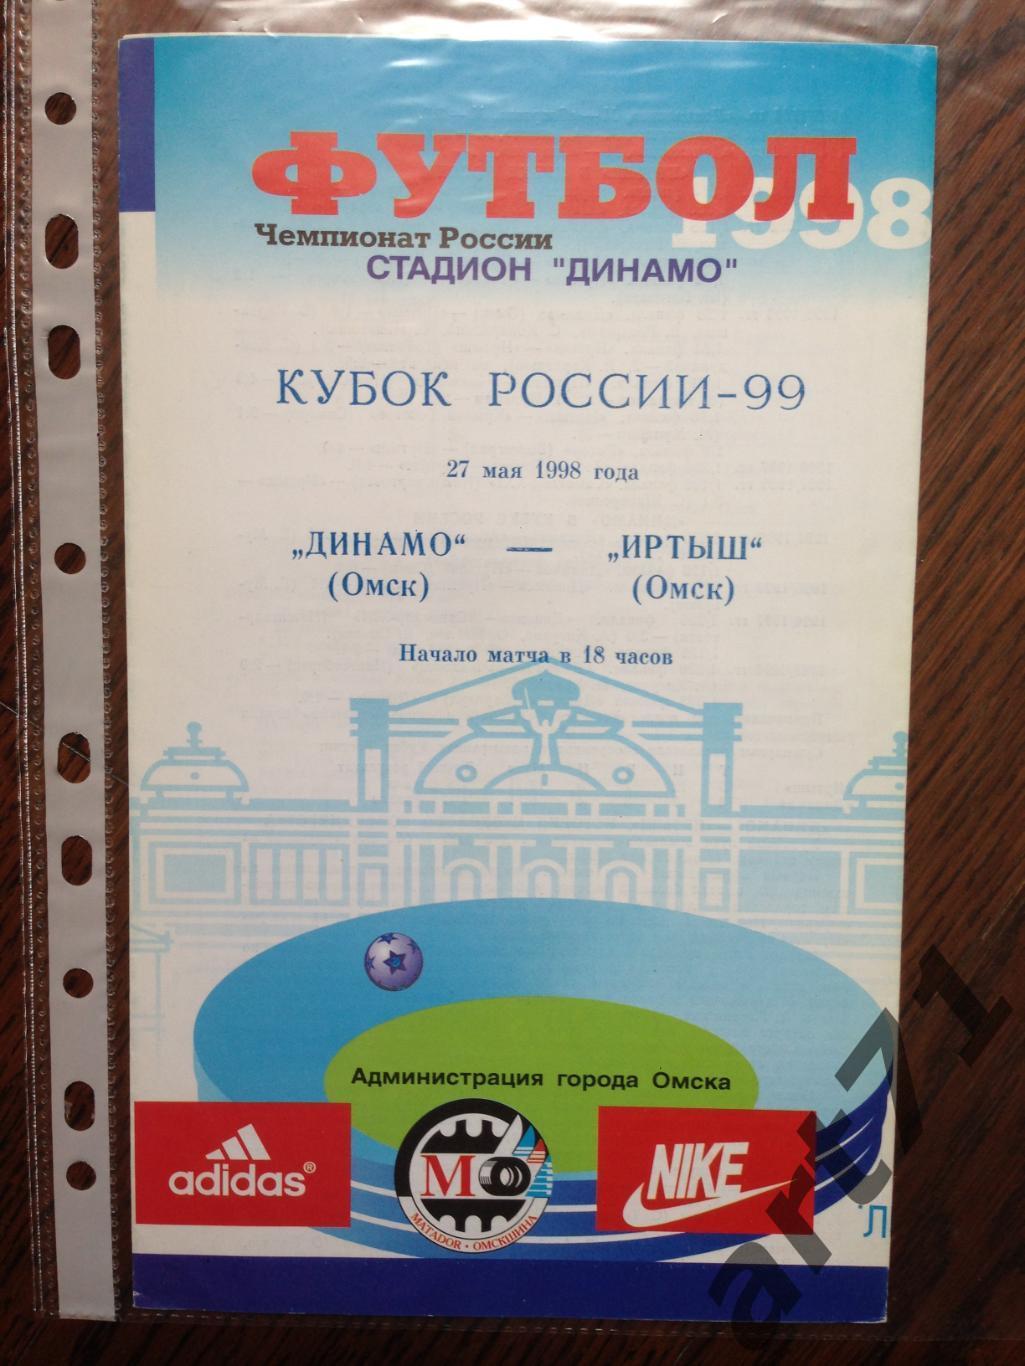 + Динамо Омск - Иртыш Омск 1998 Кубок России